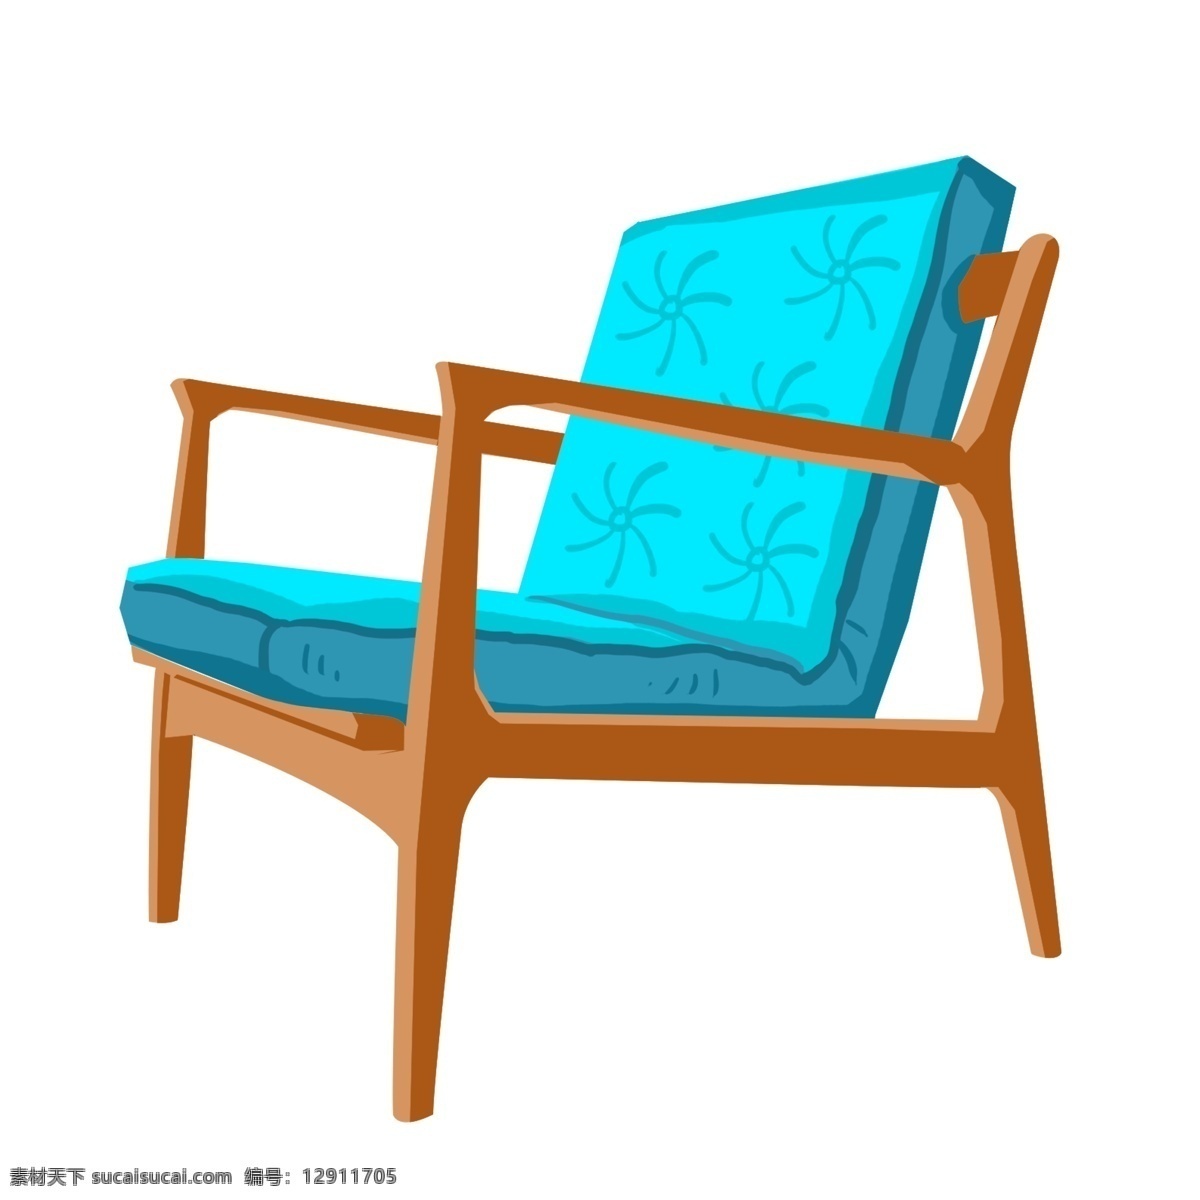 蓝色 木头 靠垫 小 椅子 木椅 蓝色坐垫 蓝色靠垫 休息 歇息 座椅 卡通木头椅子 椅子画布插画 室内 家居